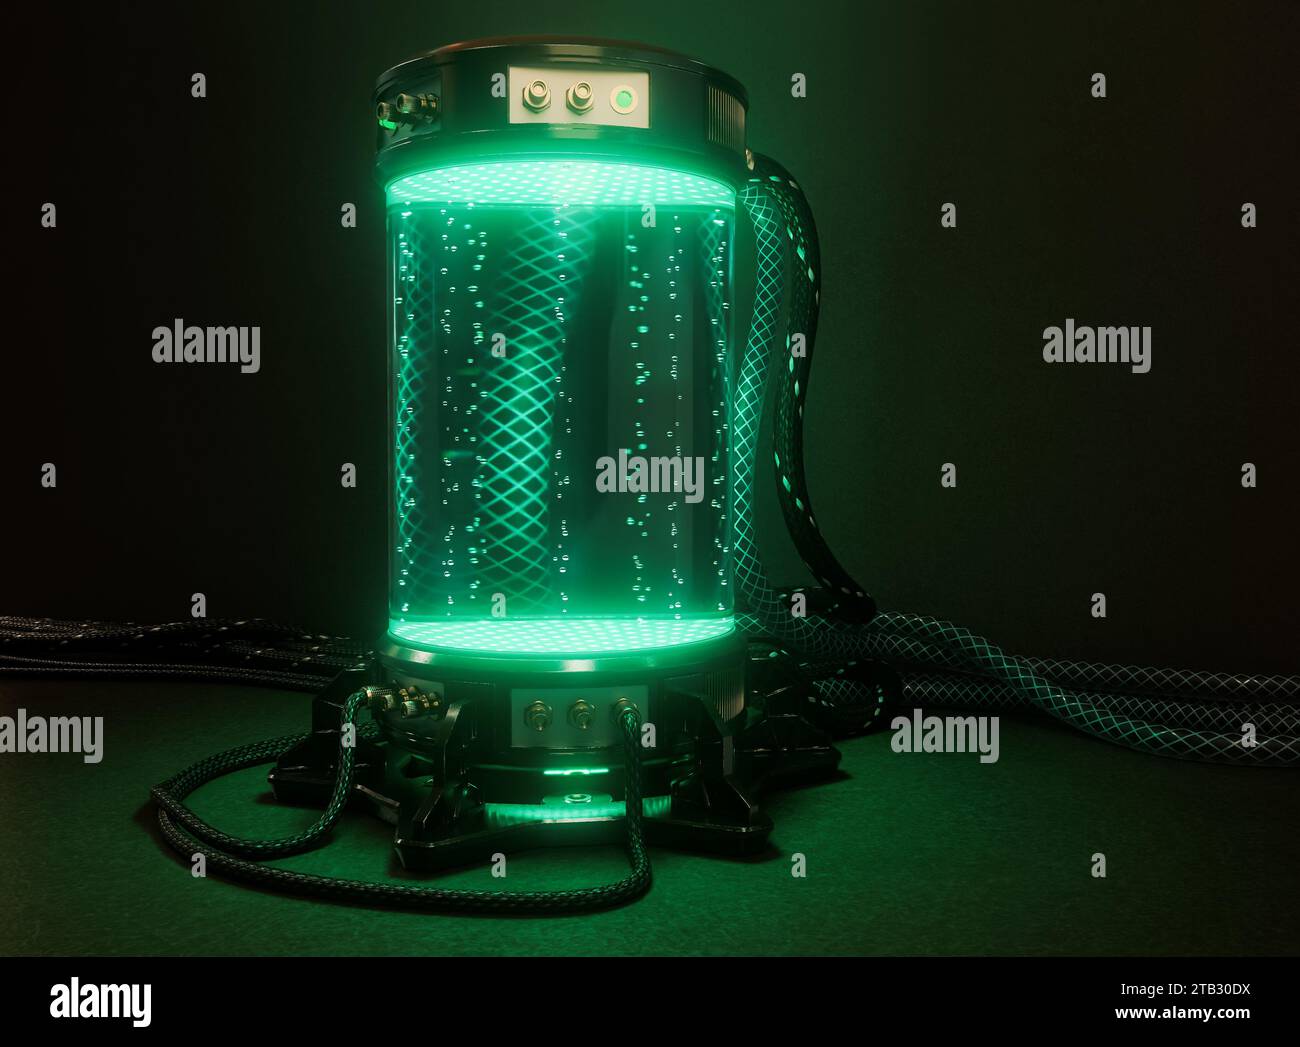 Una macchina per provette criogeniche per laboratori scientifici futuristici e scuri riempita di liquido incandescente e bolle con cavi collegati e tubi in gomma - 3D r Foto Stock